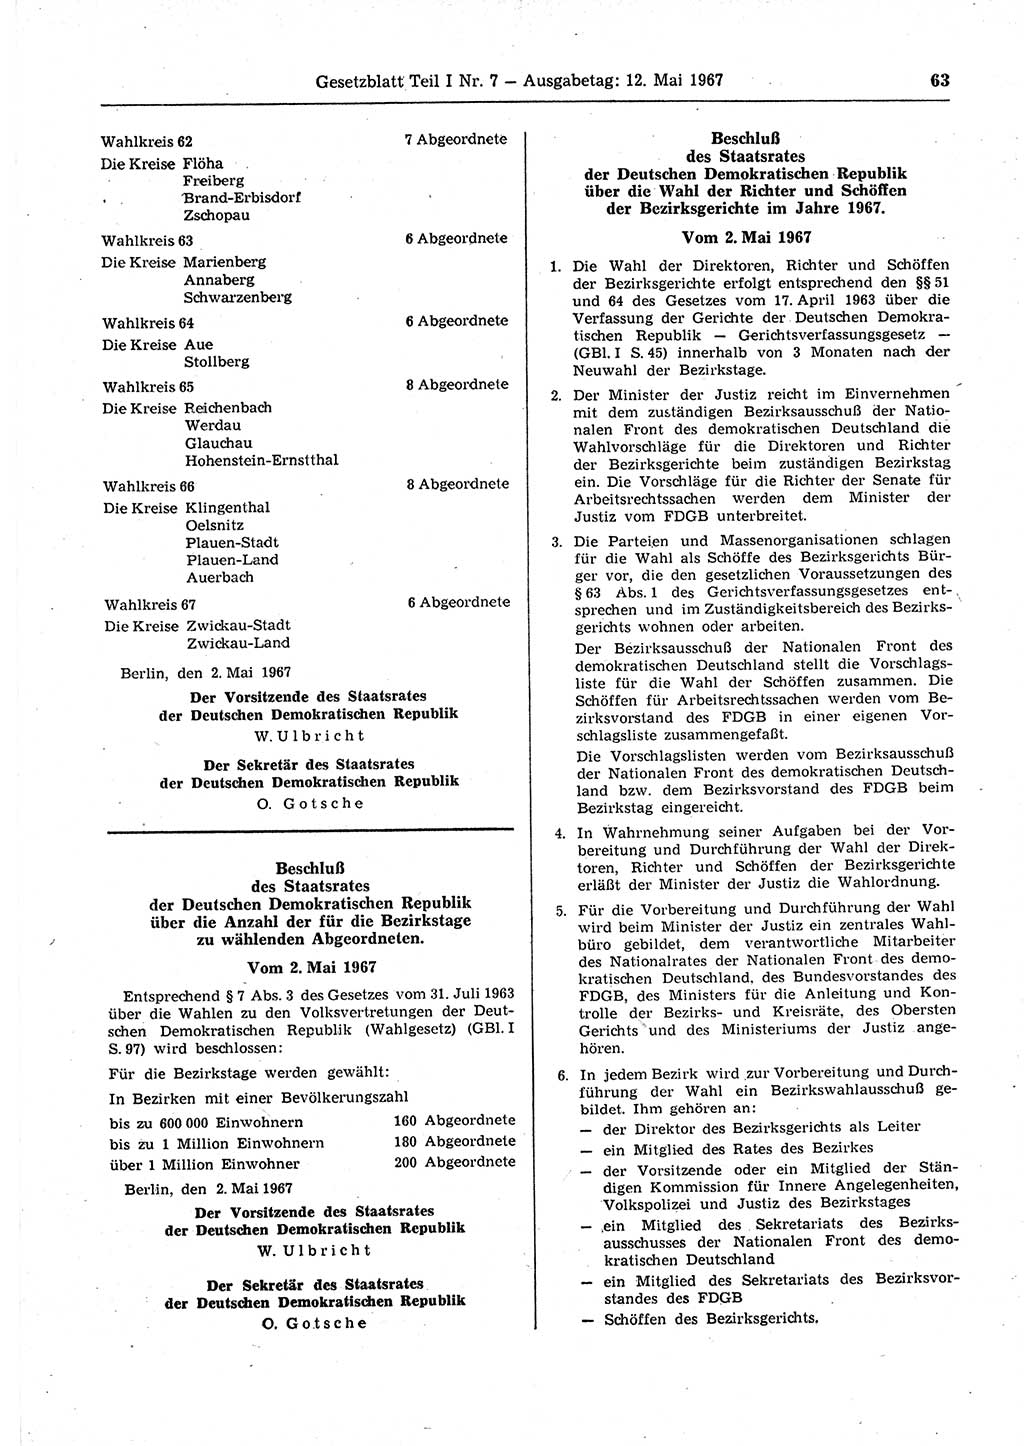 Gesetzblatt (GBl.) der Deutschen Demokratischen Republik (DDR) Teil Ⅰ 1967, Seite 63 (GBl. DDR Ⅰ 1967, S. 63)